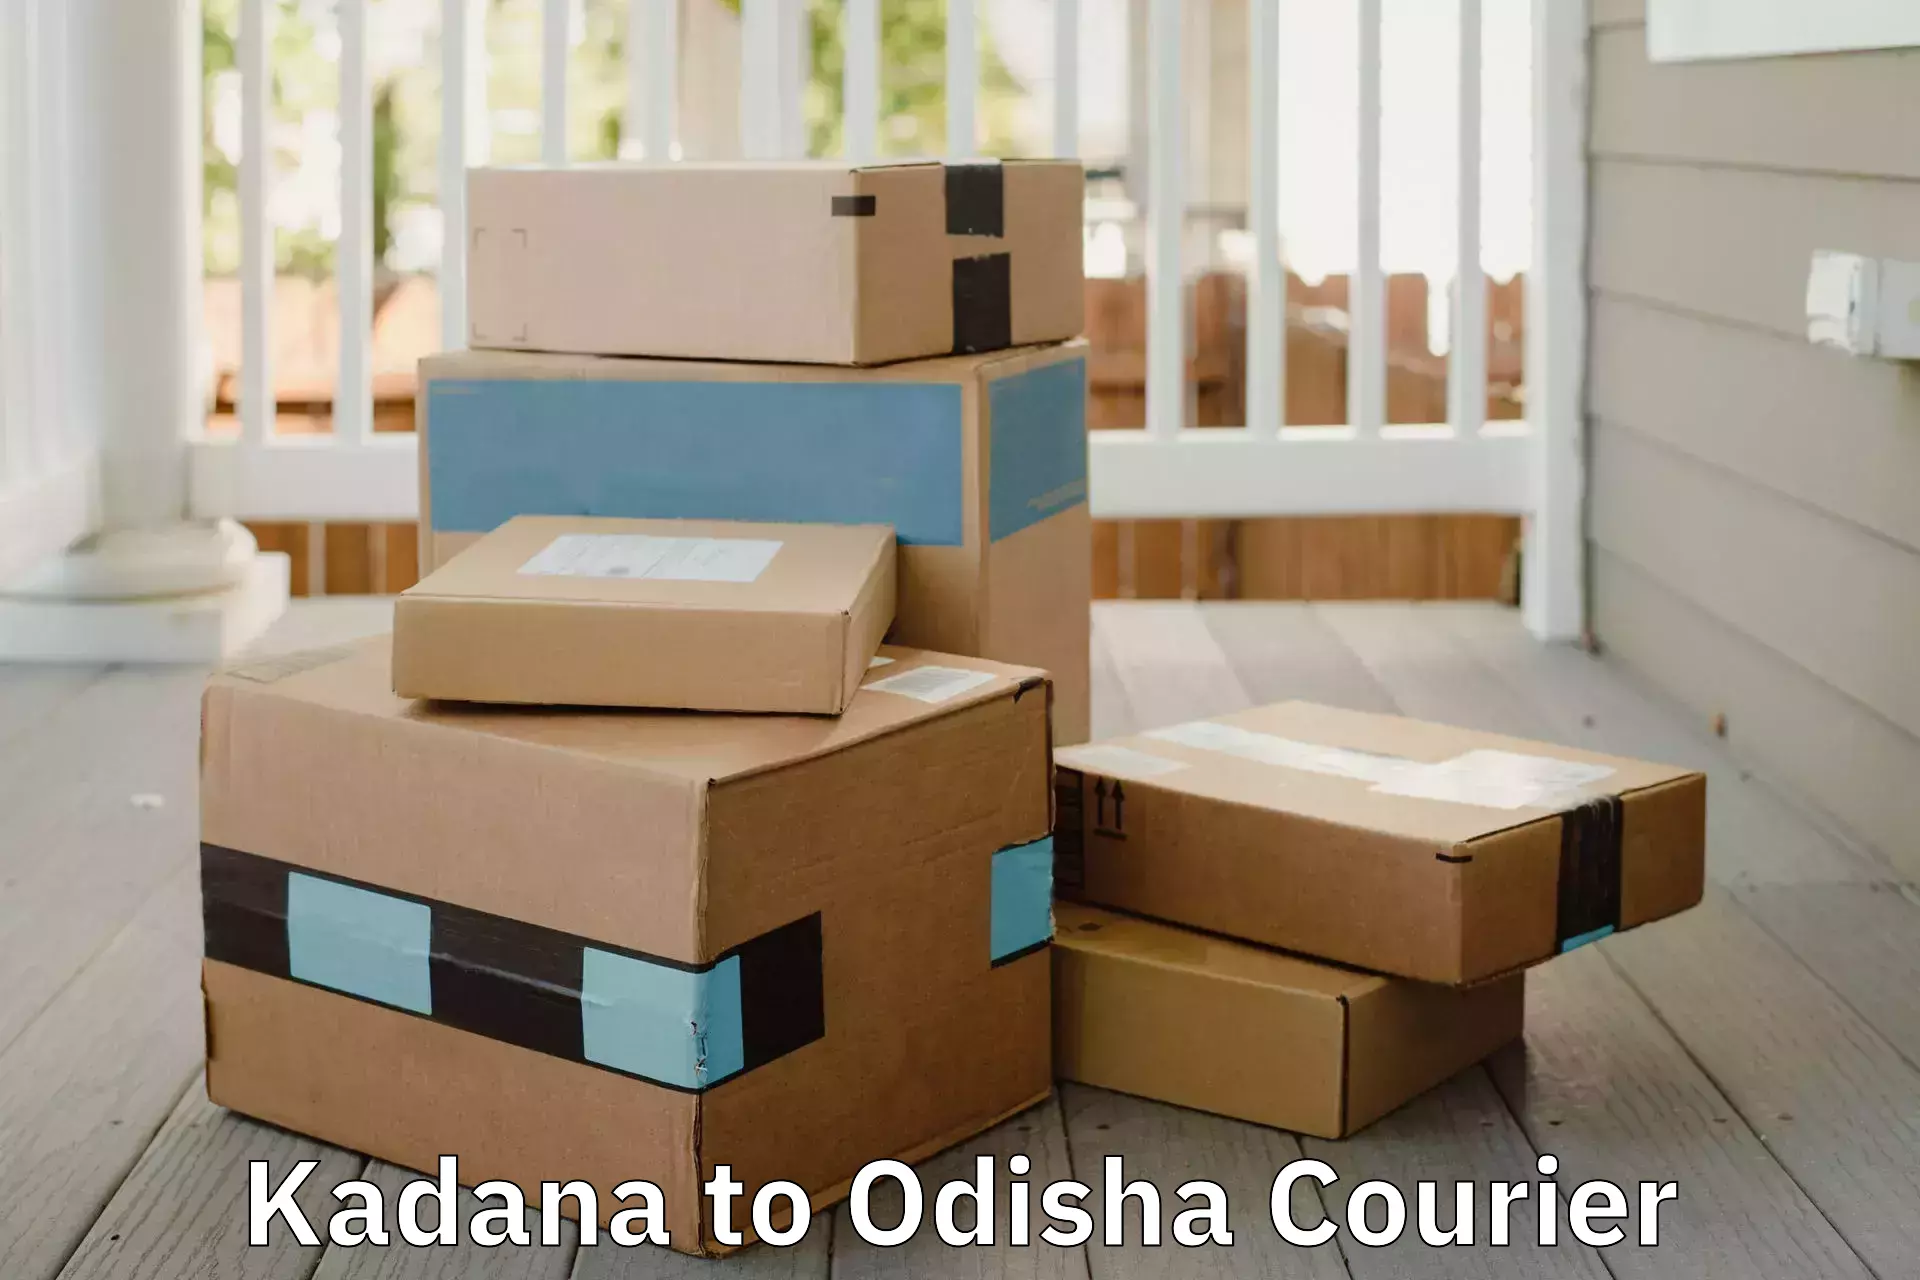 Household moving experts Kadana to Odisha